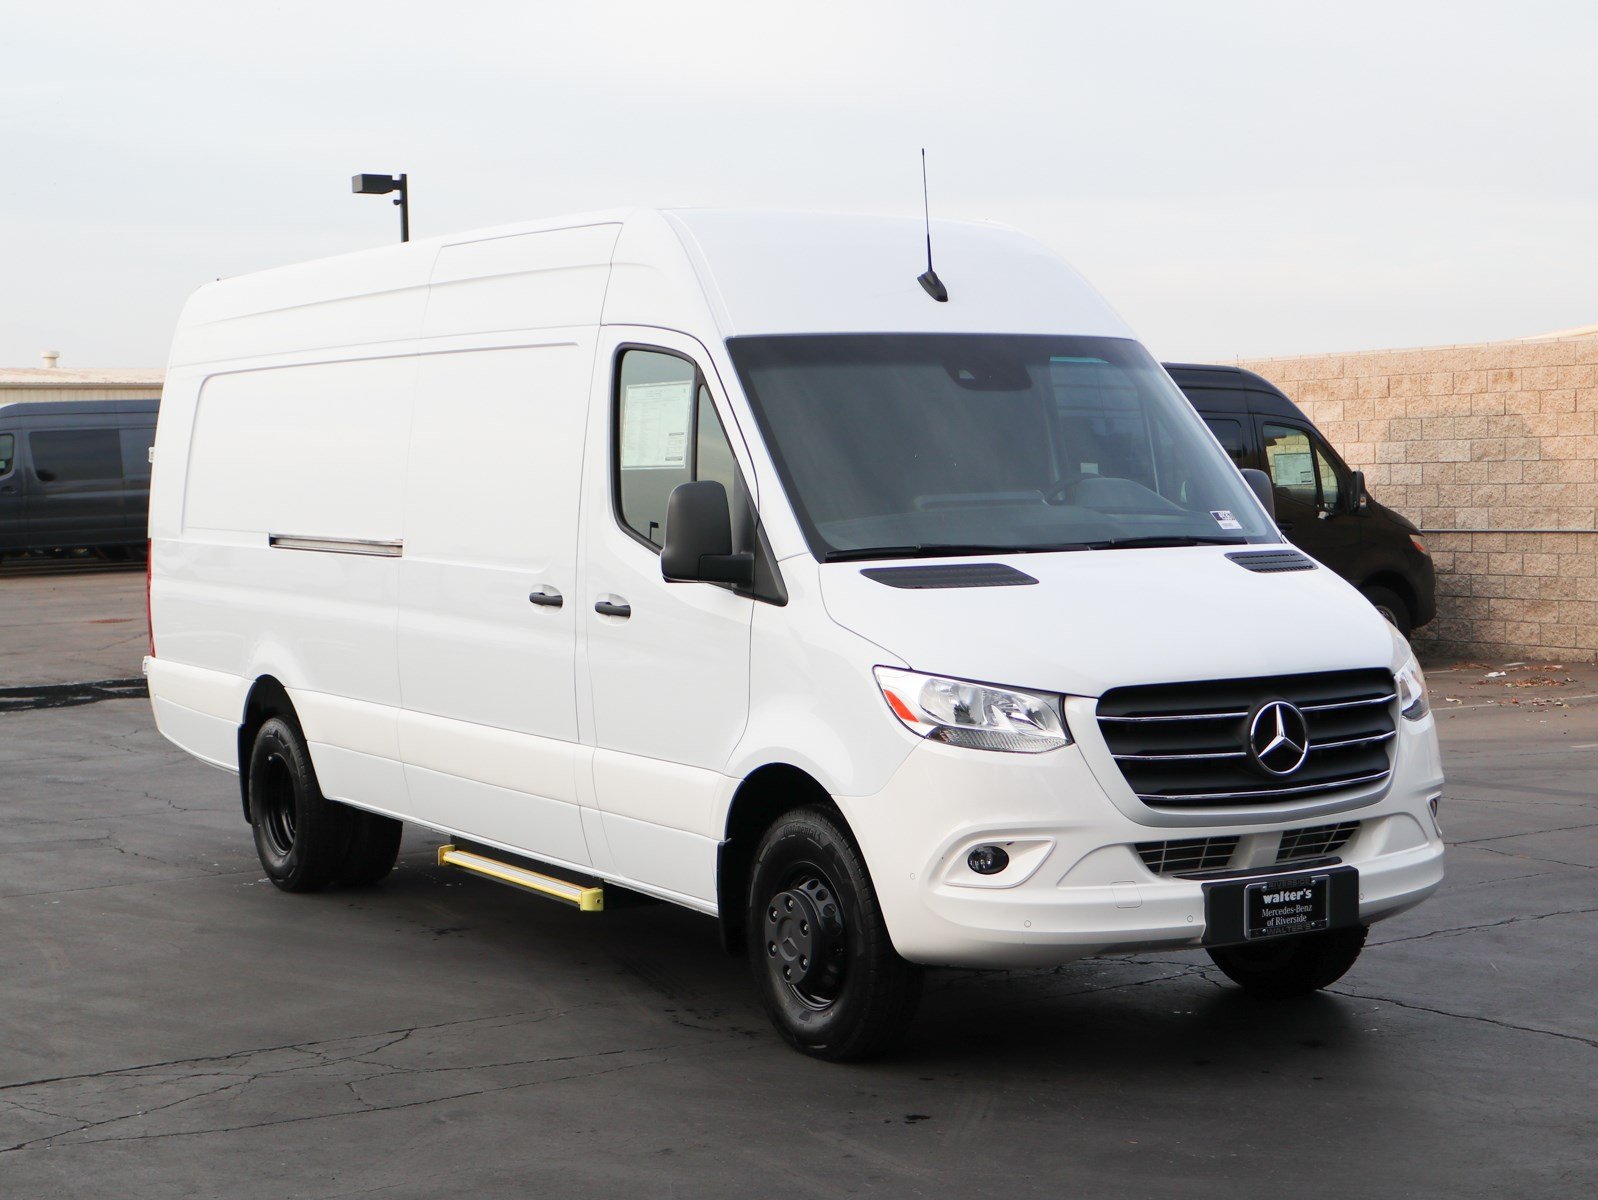 New 2019 Mercedes Benz Sprinter Cargo Van Rwd Full Size Cargo Van